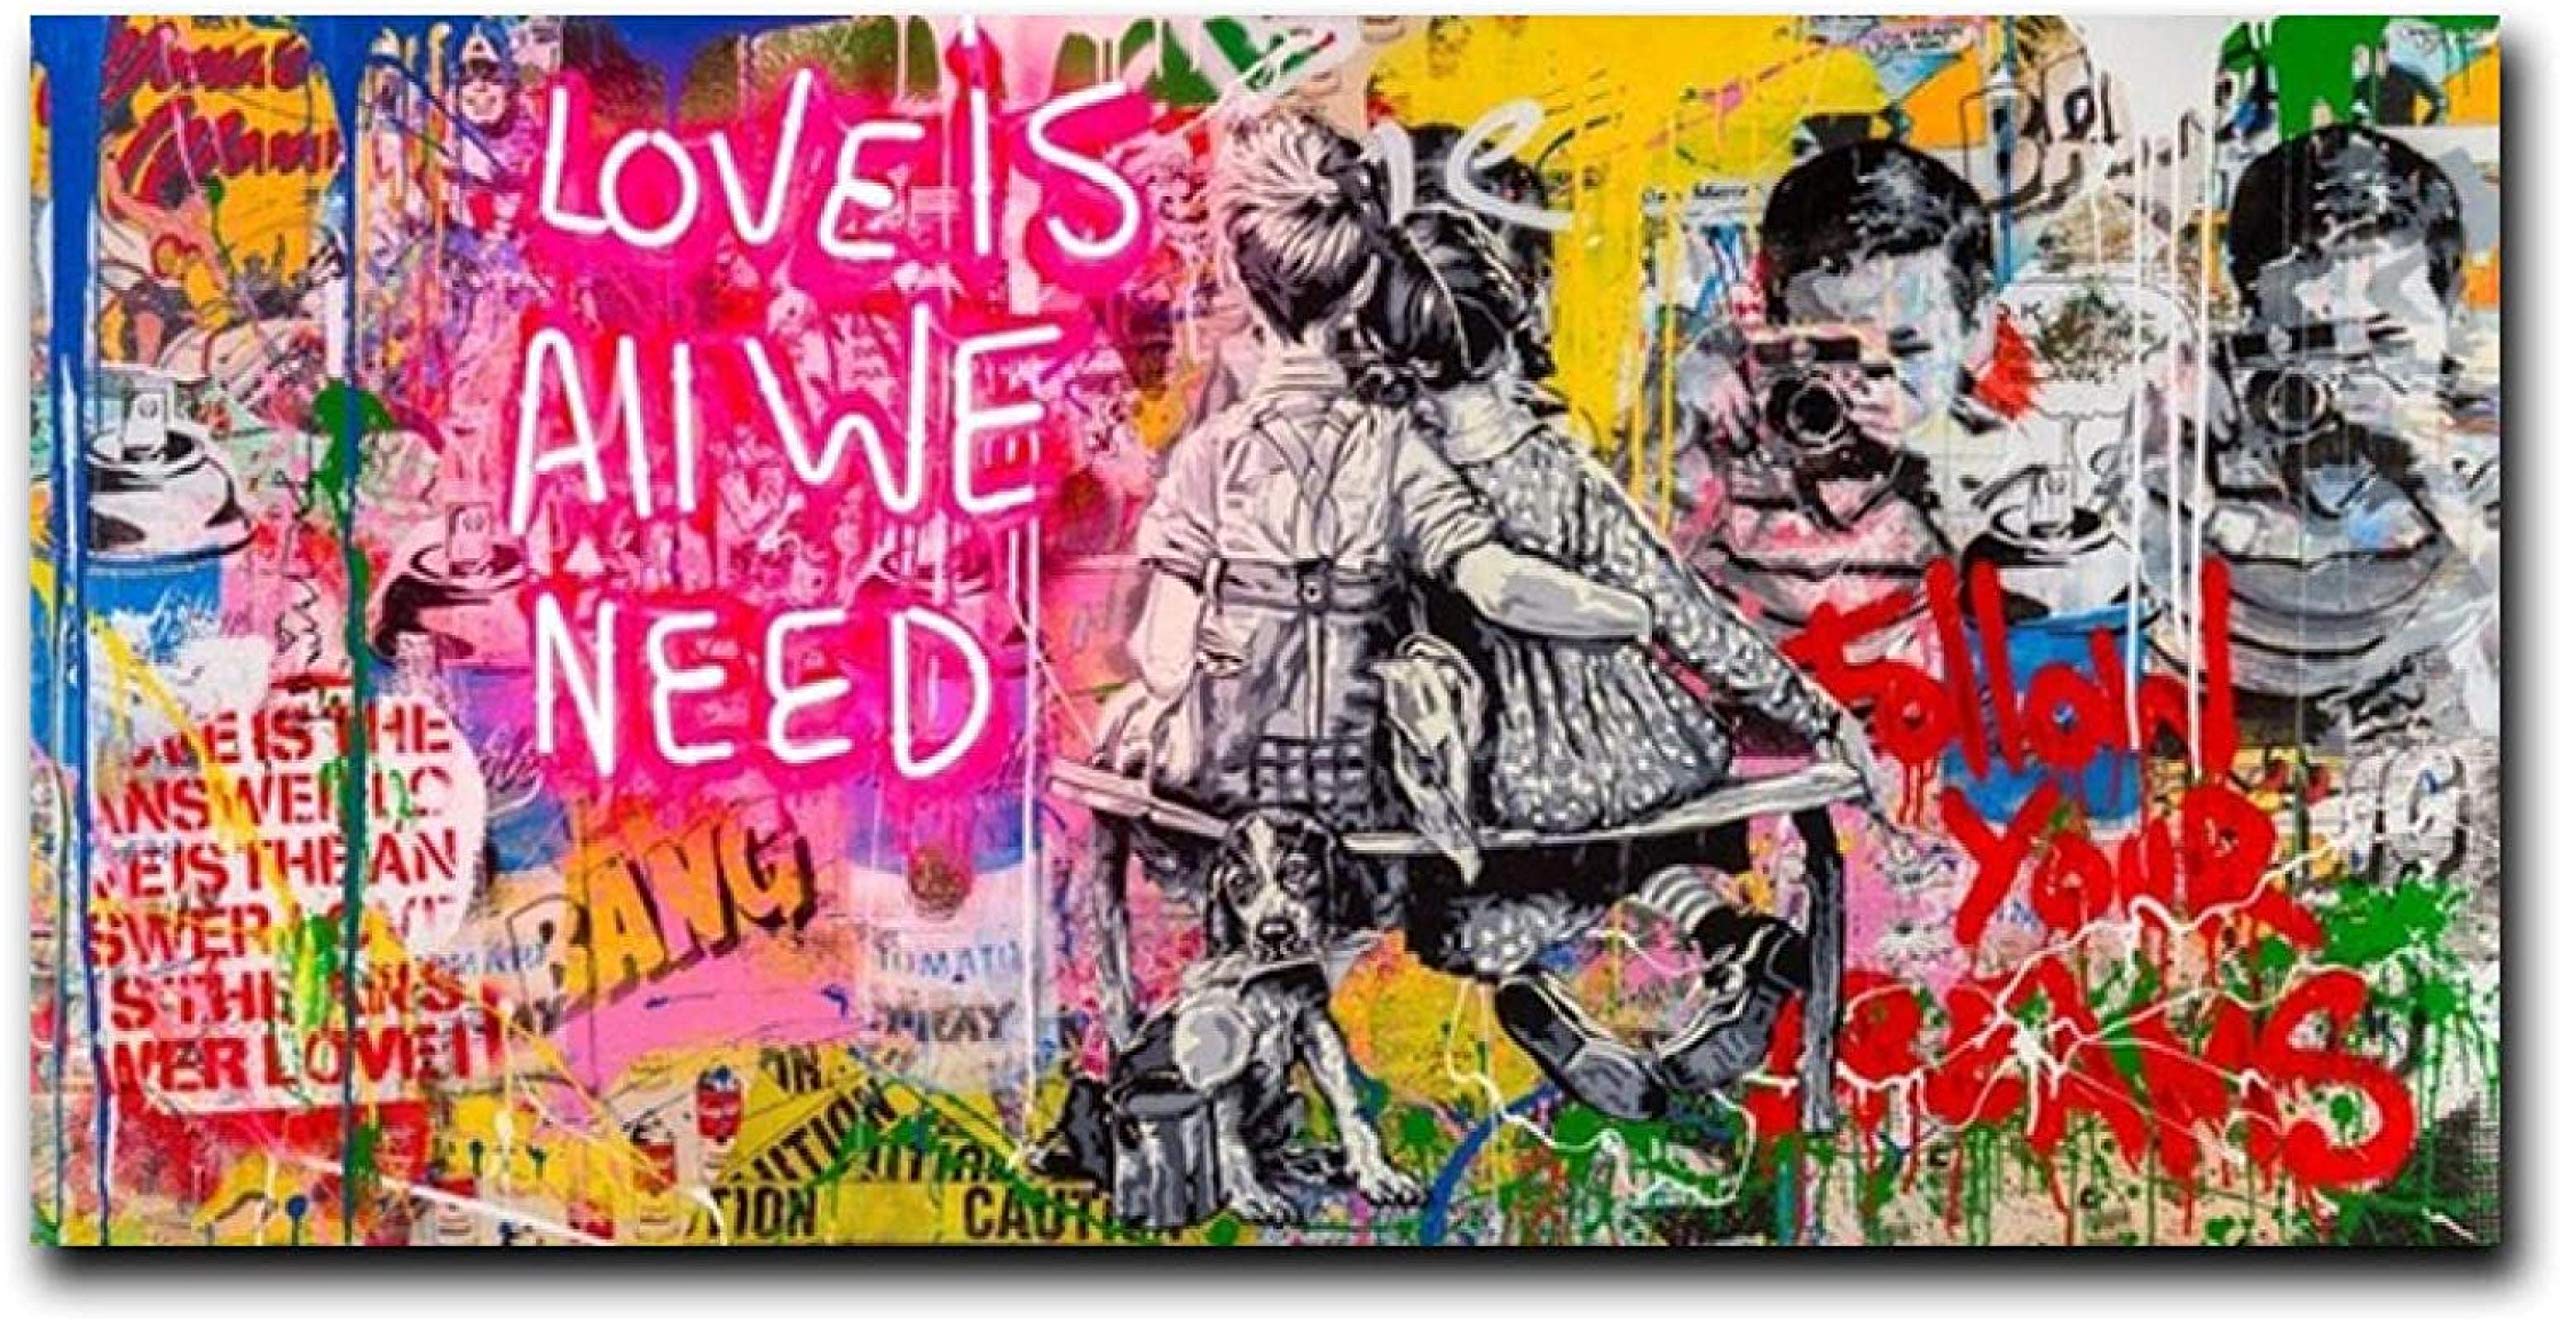 Poster-Bild 70 x 140 cm ohne Rahmen Graffiti-Kunst, Banksy Love Is All We Need Gemälde auf Leinwand, Wandbild, Street Art, Poster und Drucke Dekor